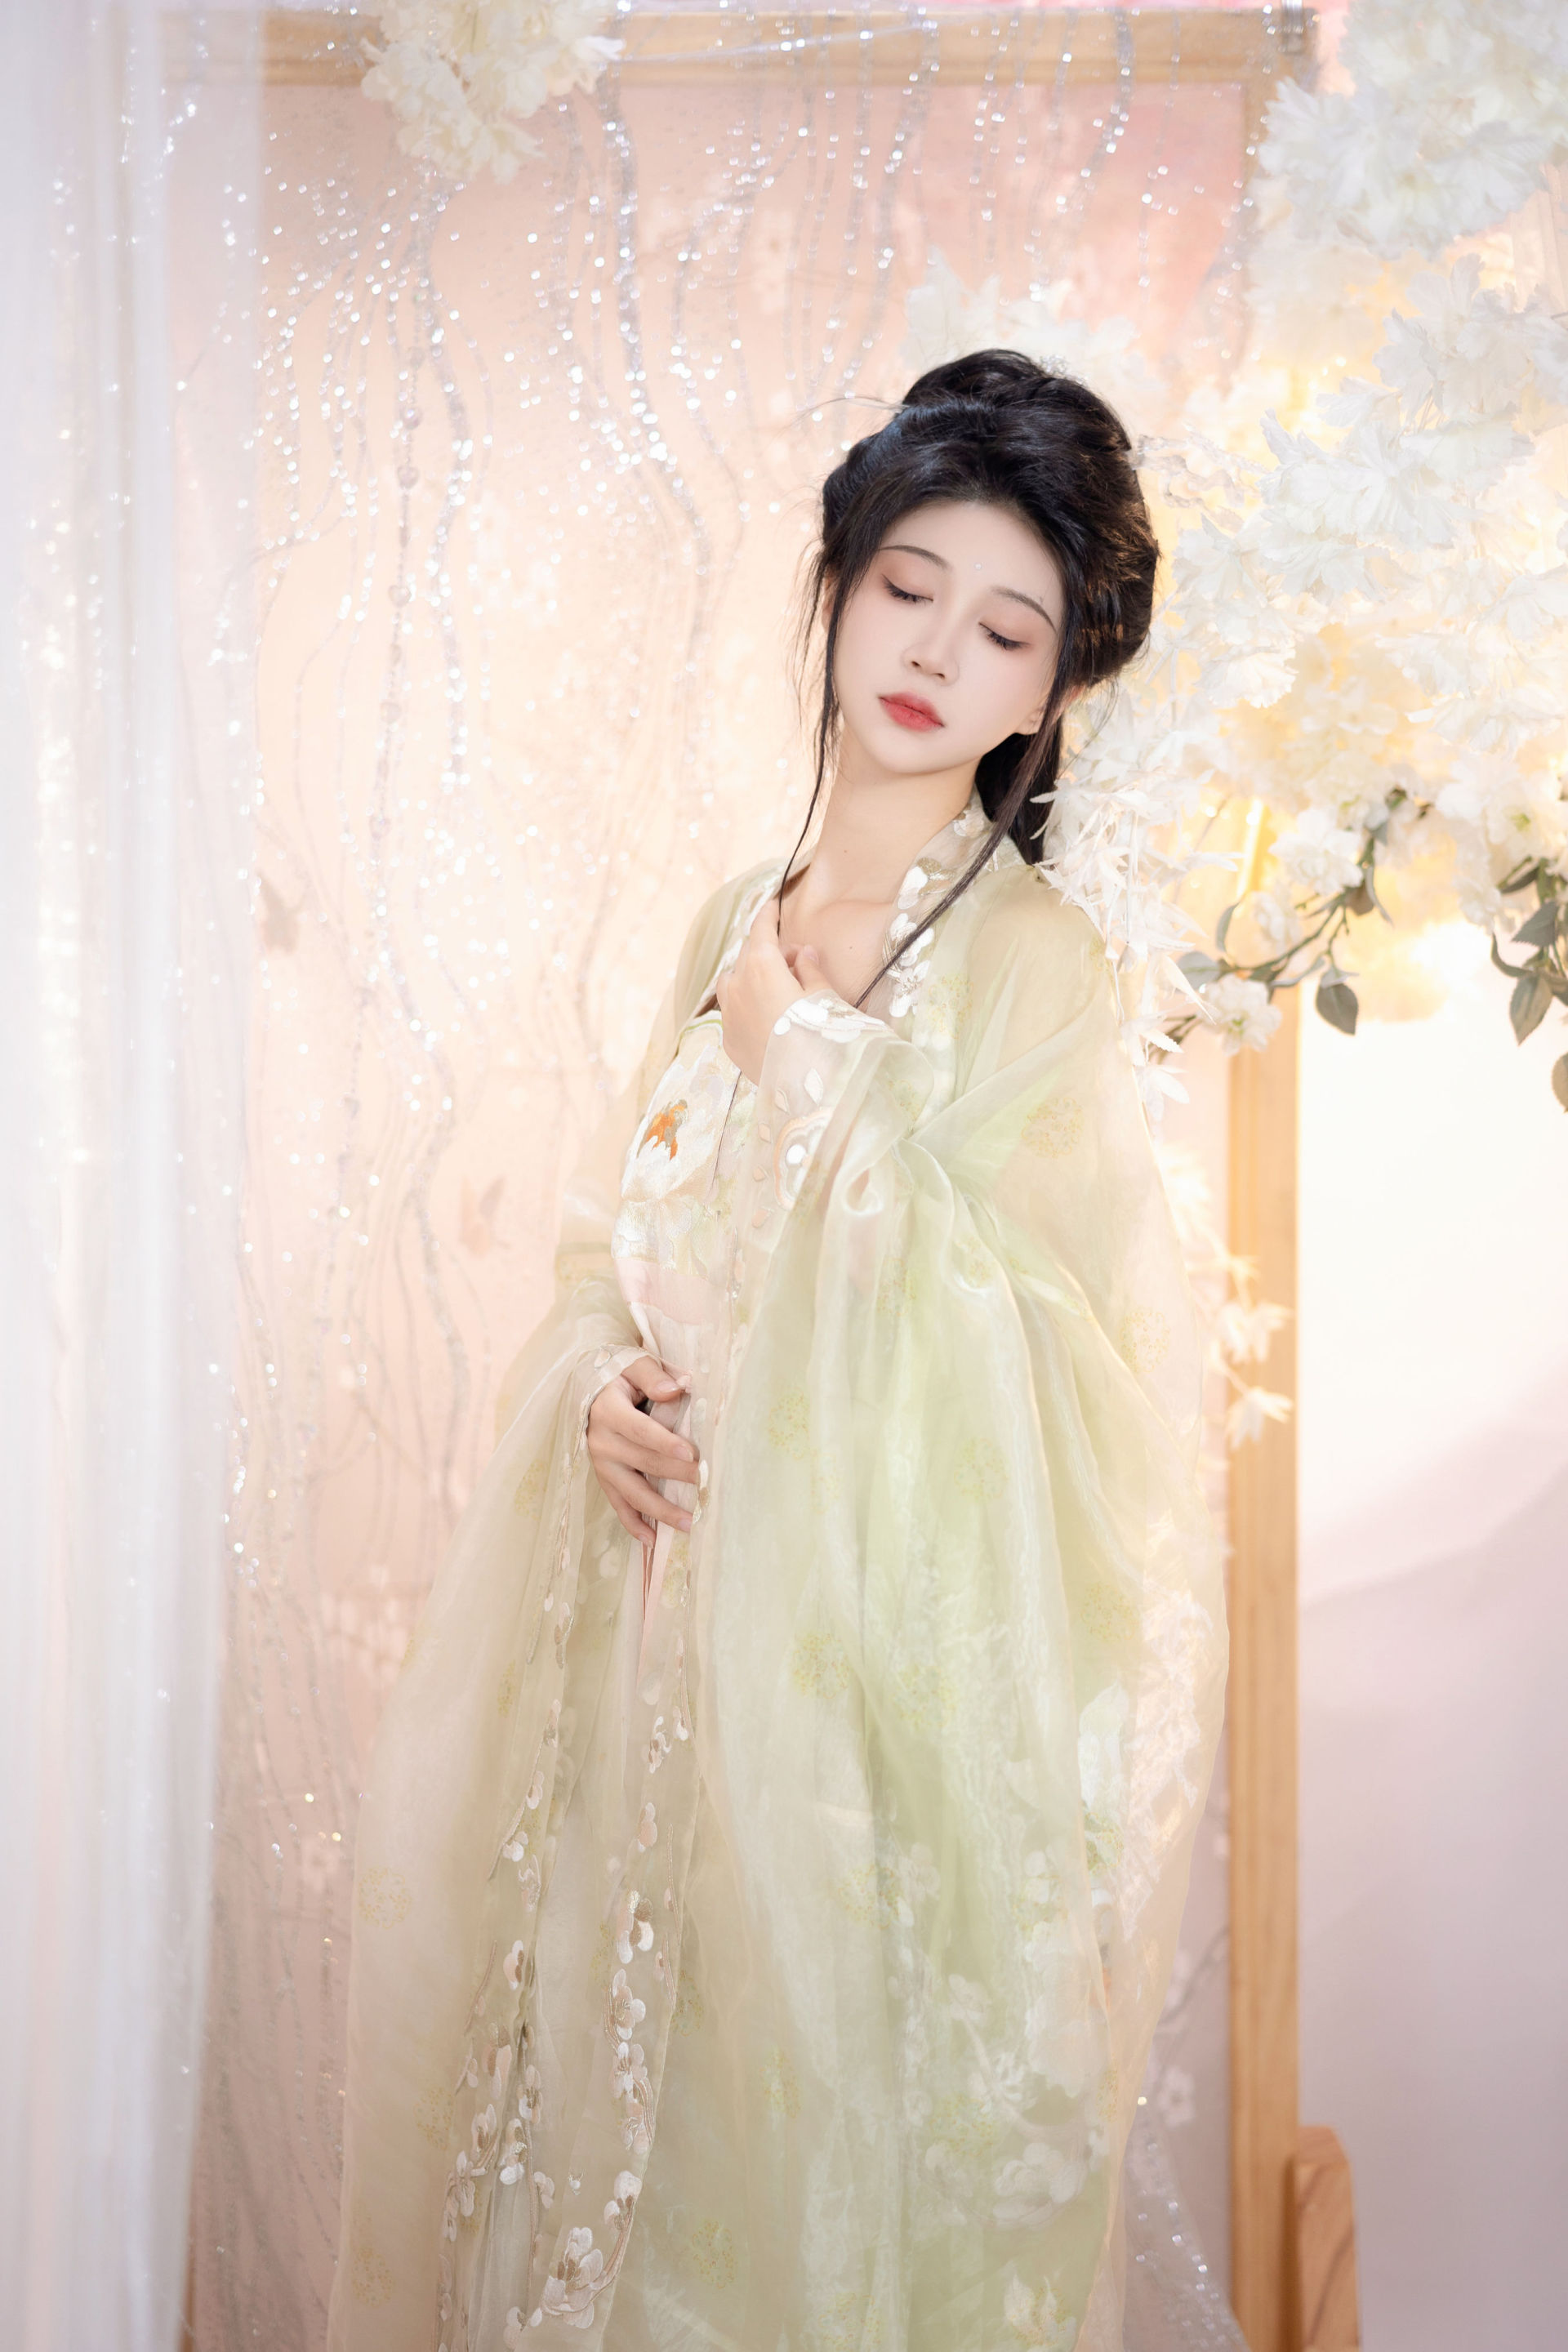 长乐 古装 汉服 模特 美人 古代 中国风